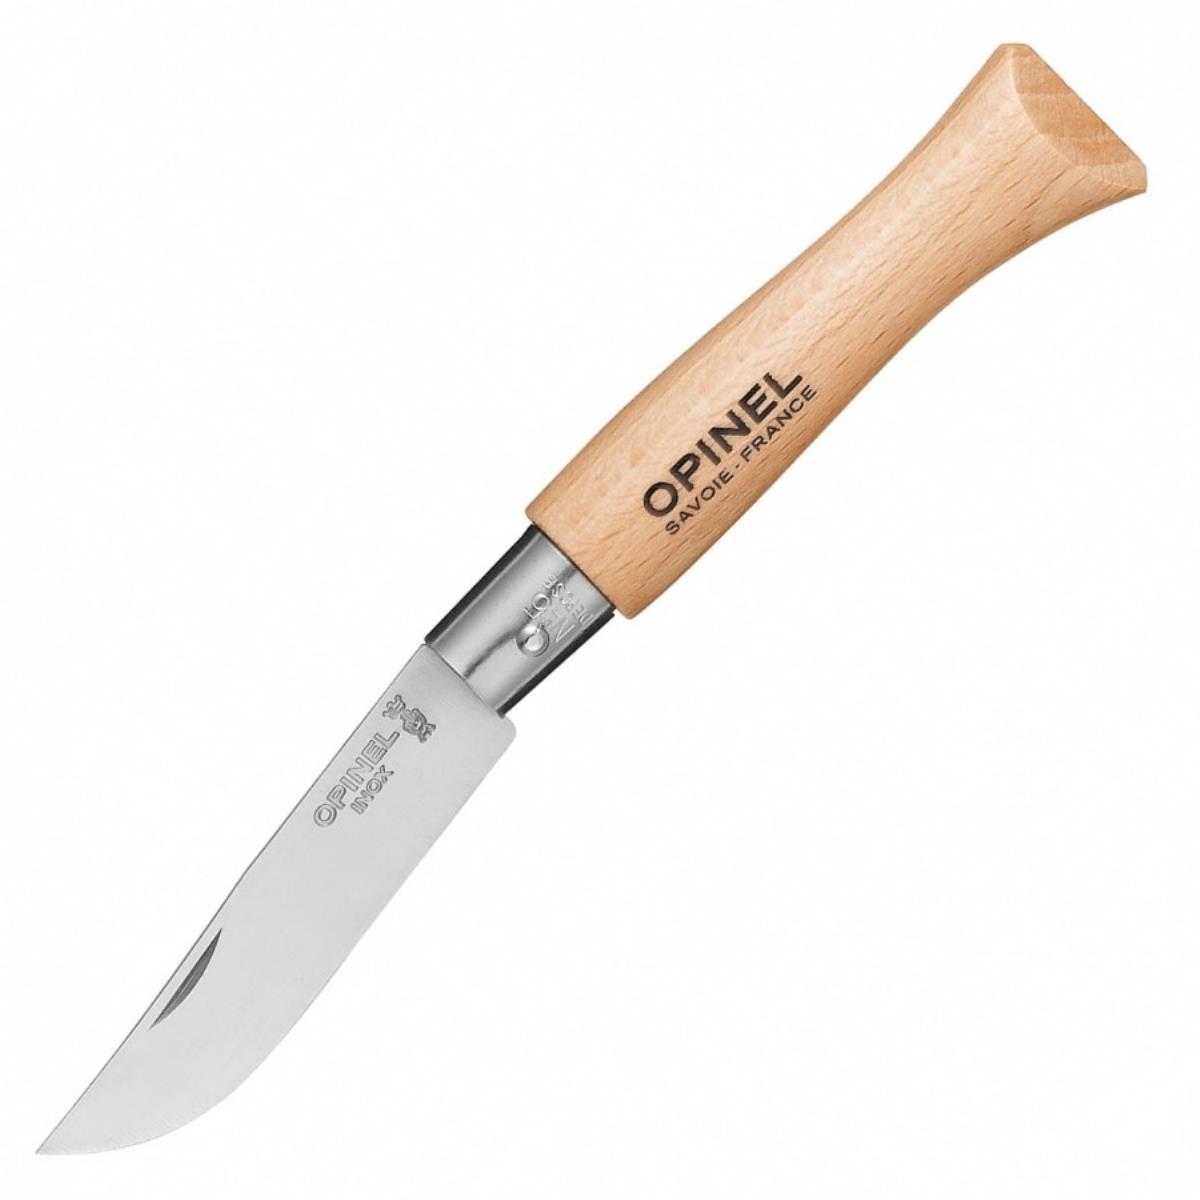 Нож №5 VRI Tradition Inox (нержавеющая сталь, рукоять бук, длина клинка 6 см) 0010729 OPINEL нож цельнометаллический охотник сталь m390 рукоять карбон